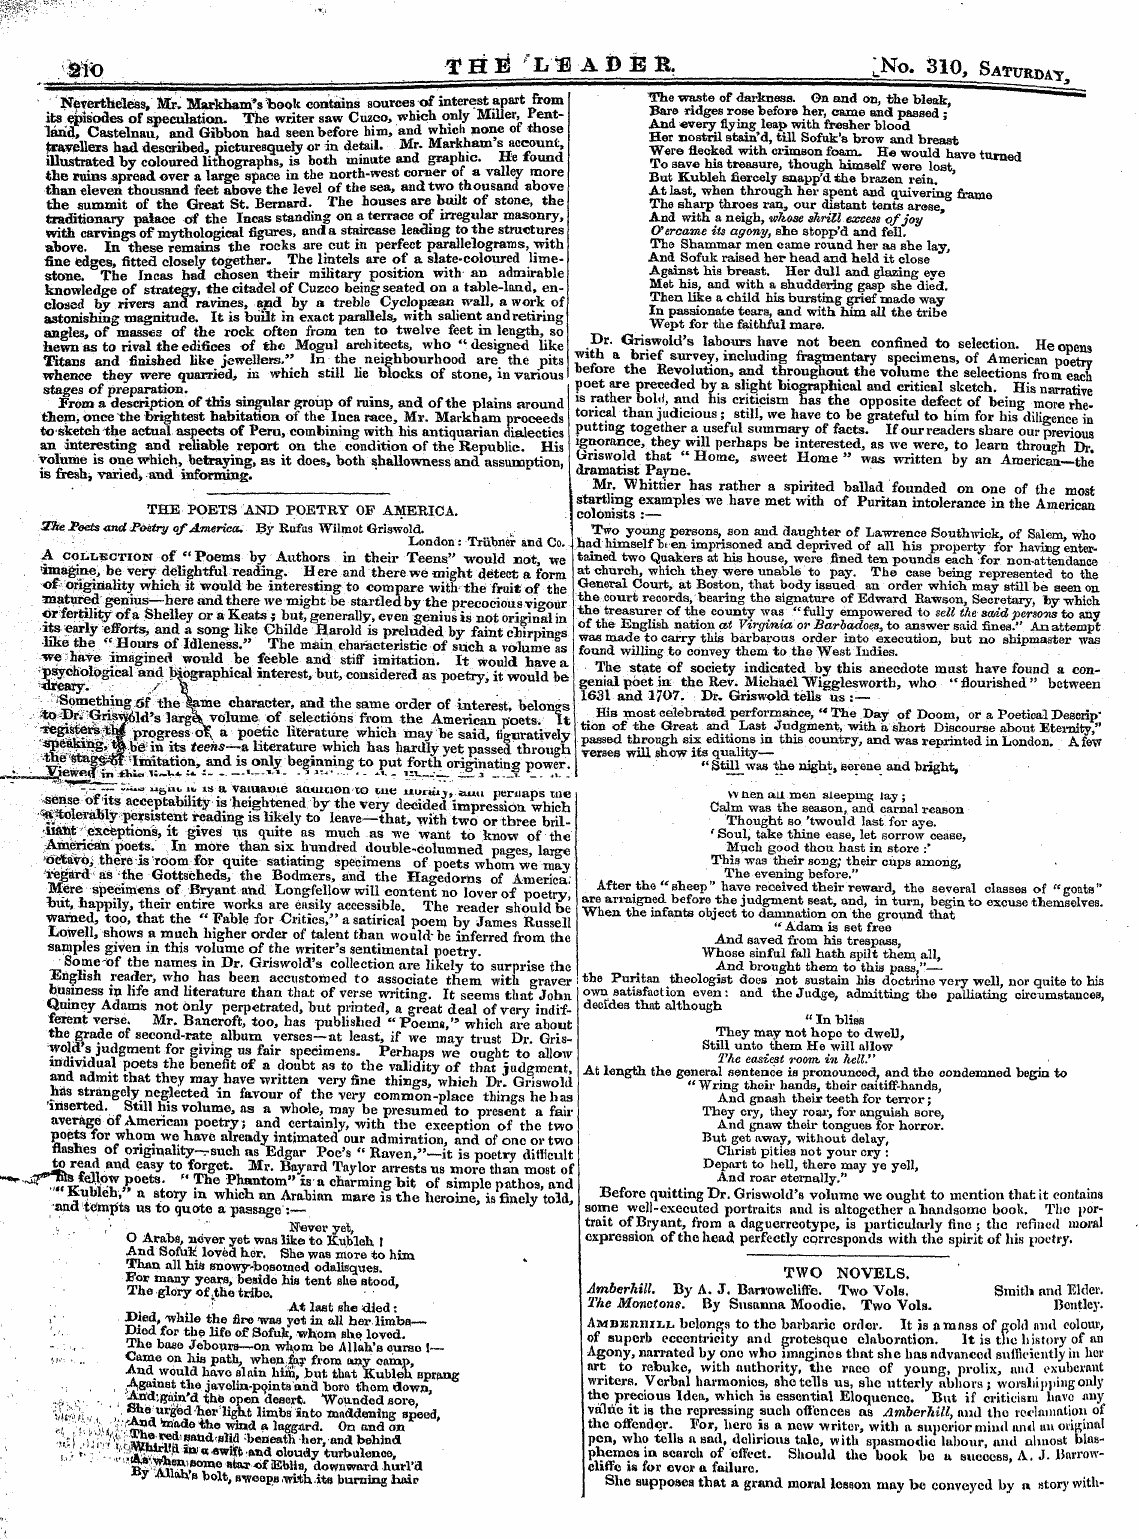 Leader (1850-1860): jS F Y, 2nd edition - M*> Teta 'I/B-Afebft. Ino. 310, Saturday...